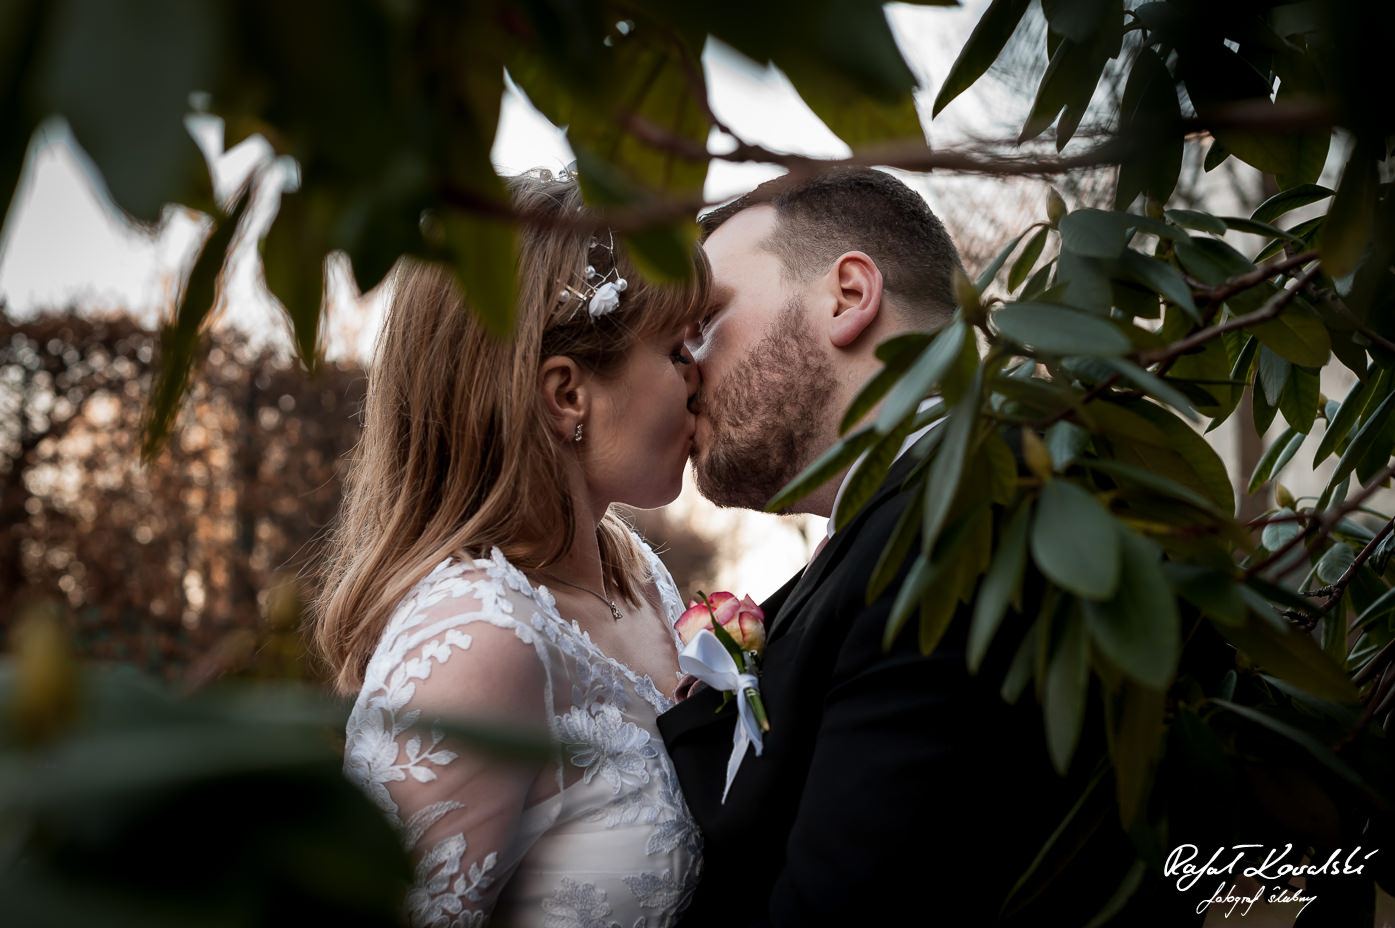 Plener Ślubny Gdynia - pocałunek młodej pary sfotografowany w prześwicie zielonych liści